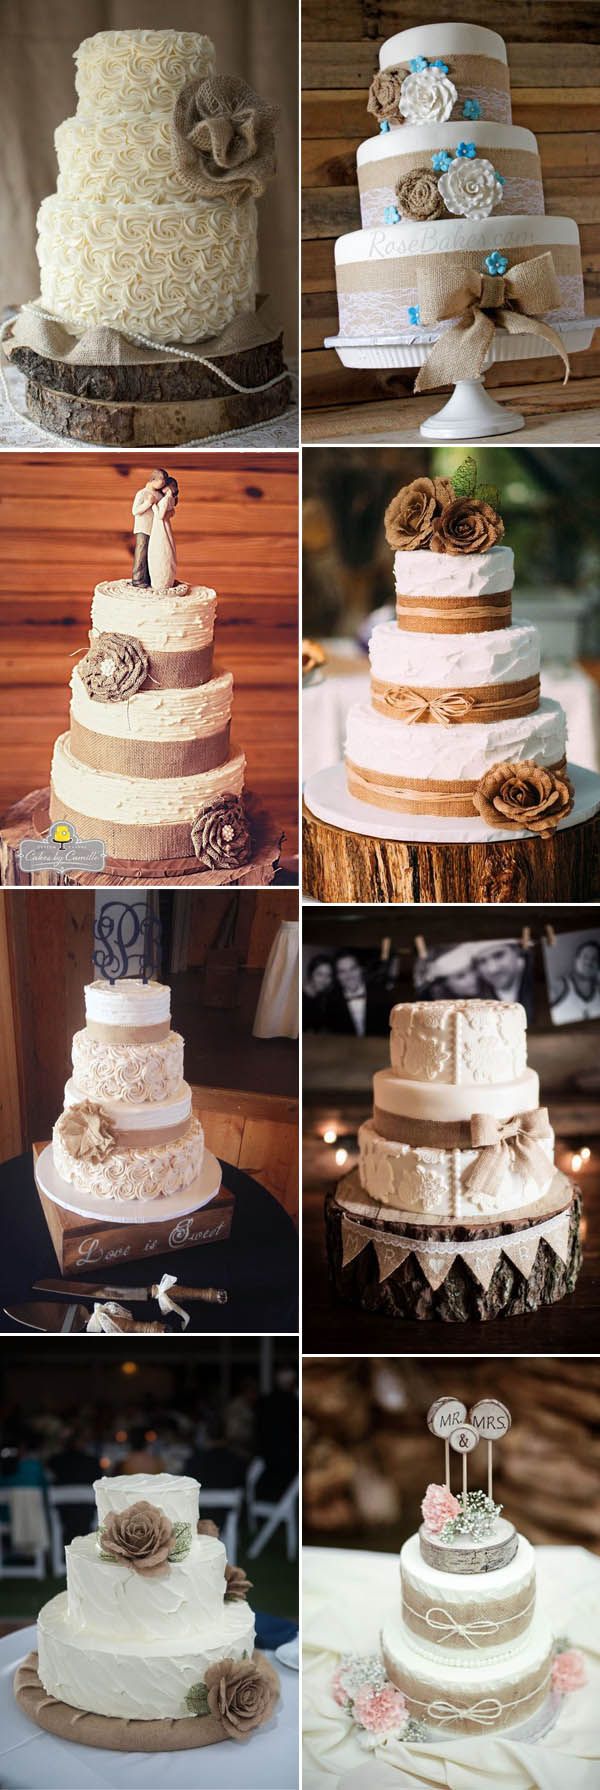 Rustic Burlap Wedding Cake Ideas